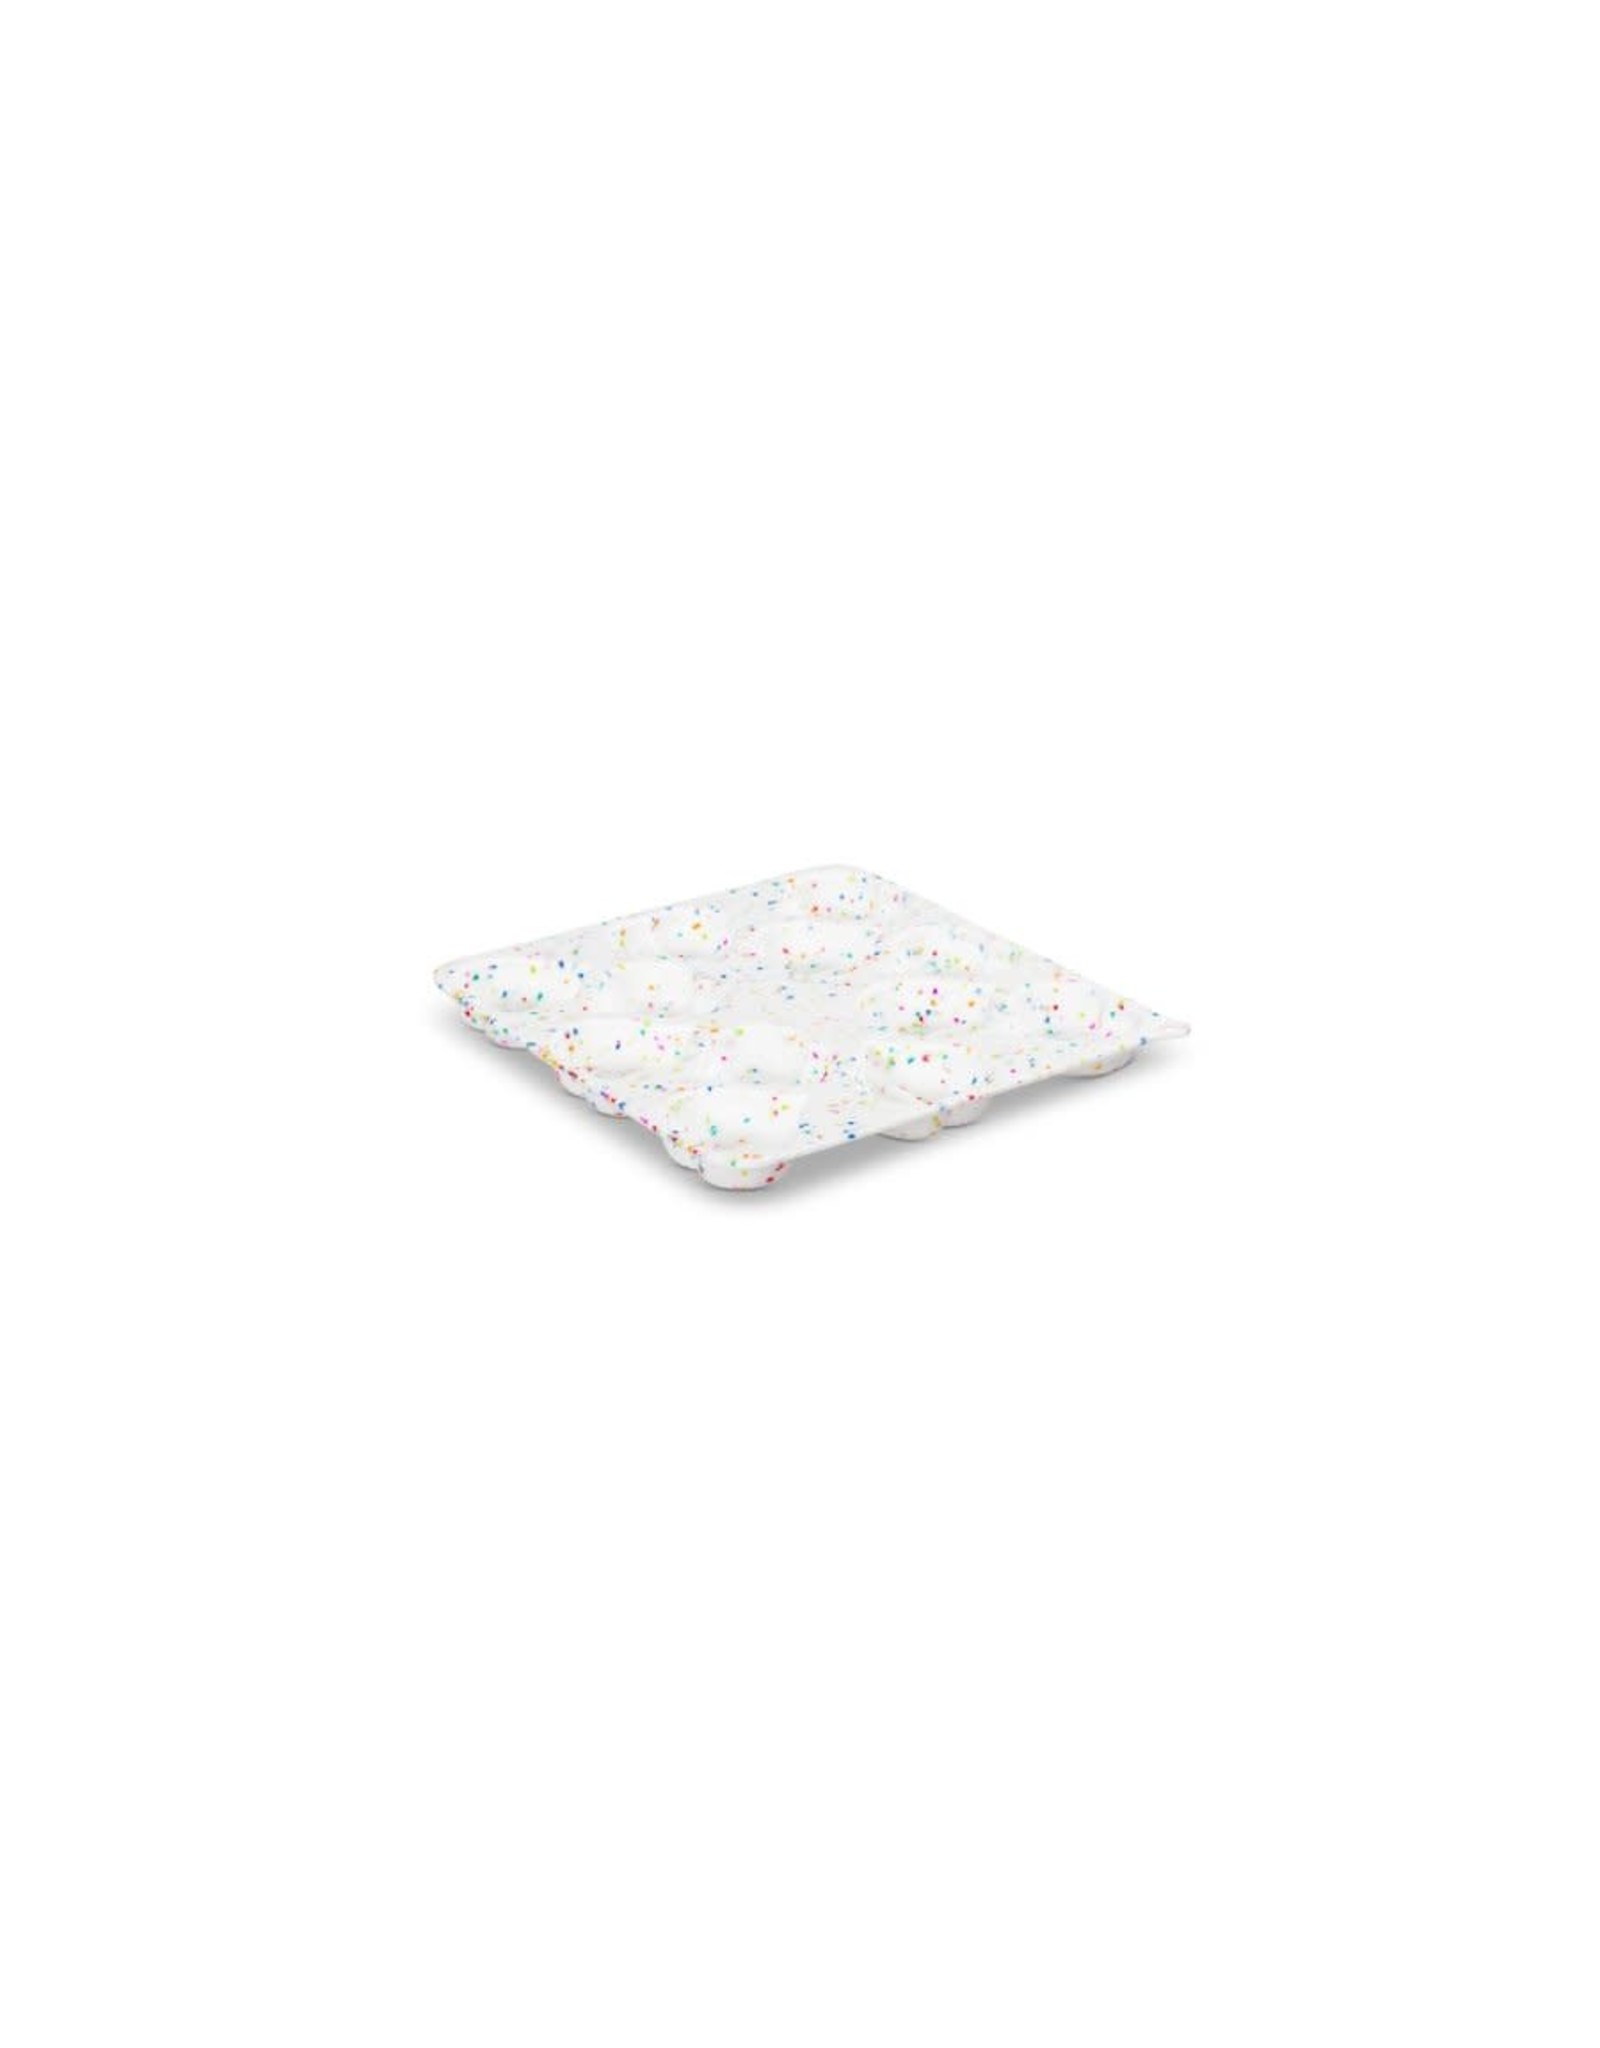 Moule carré 8'' x 8'' en silicone - confetti